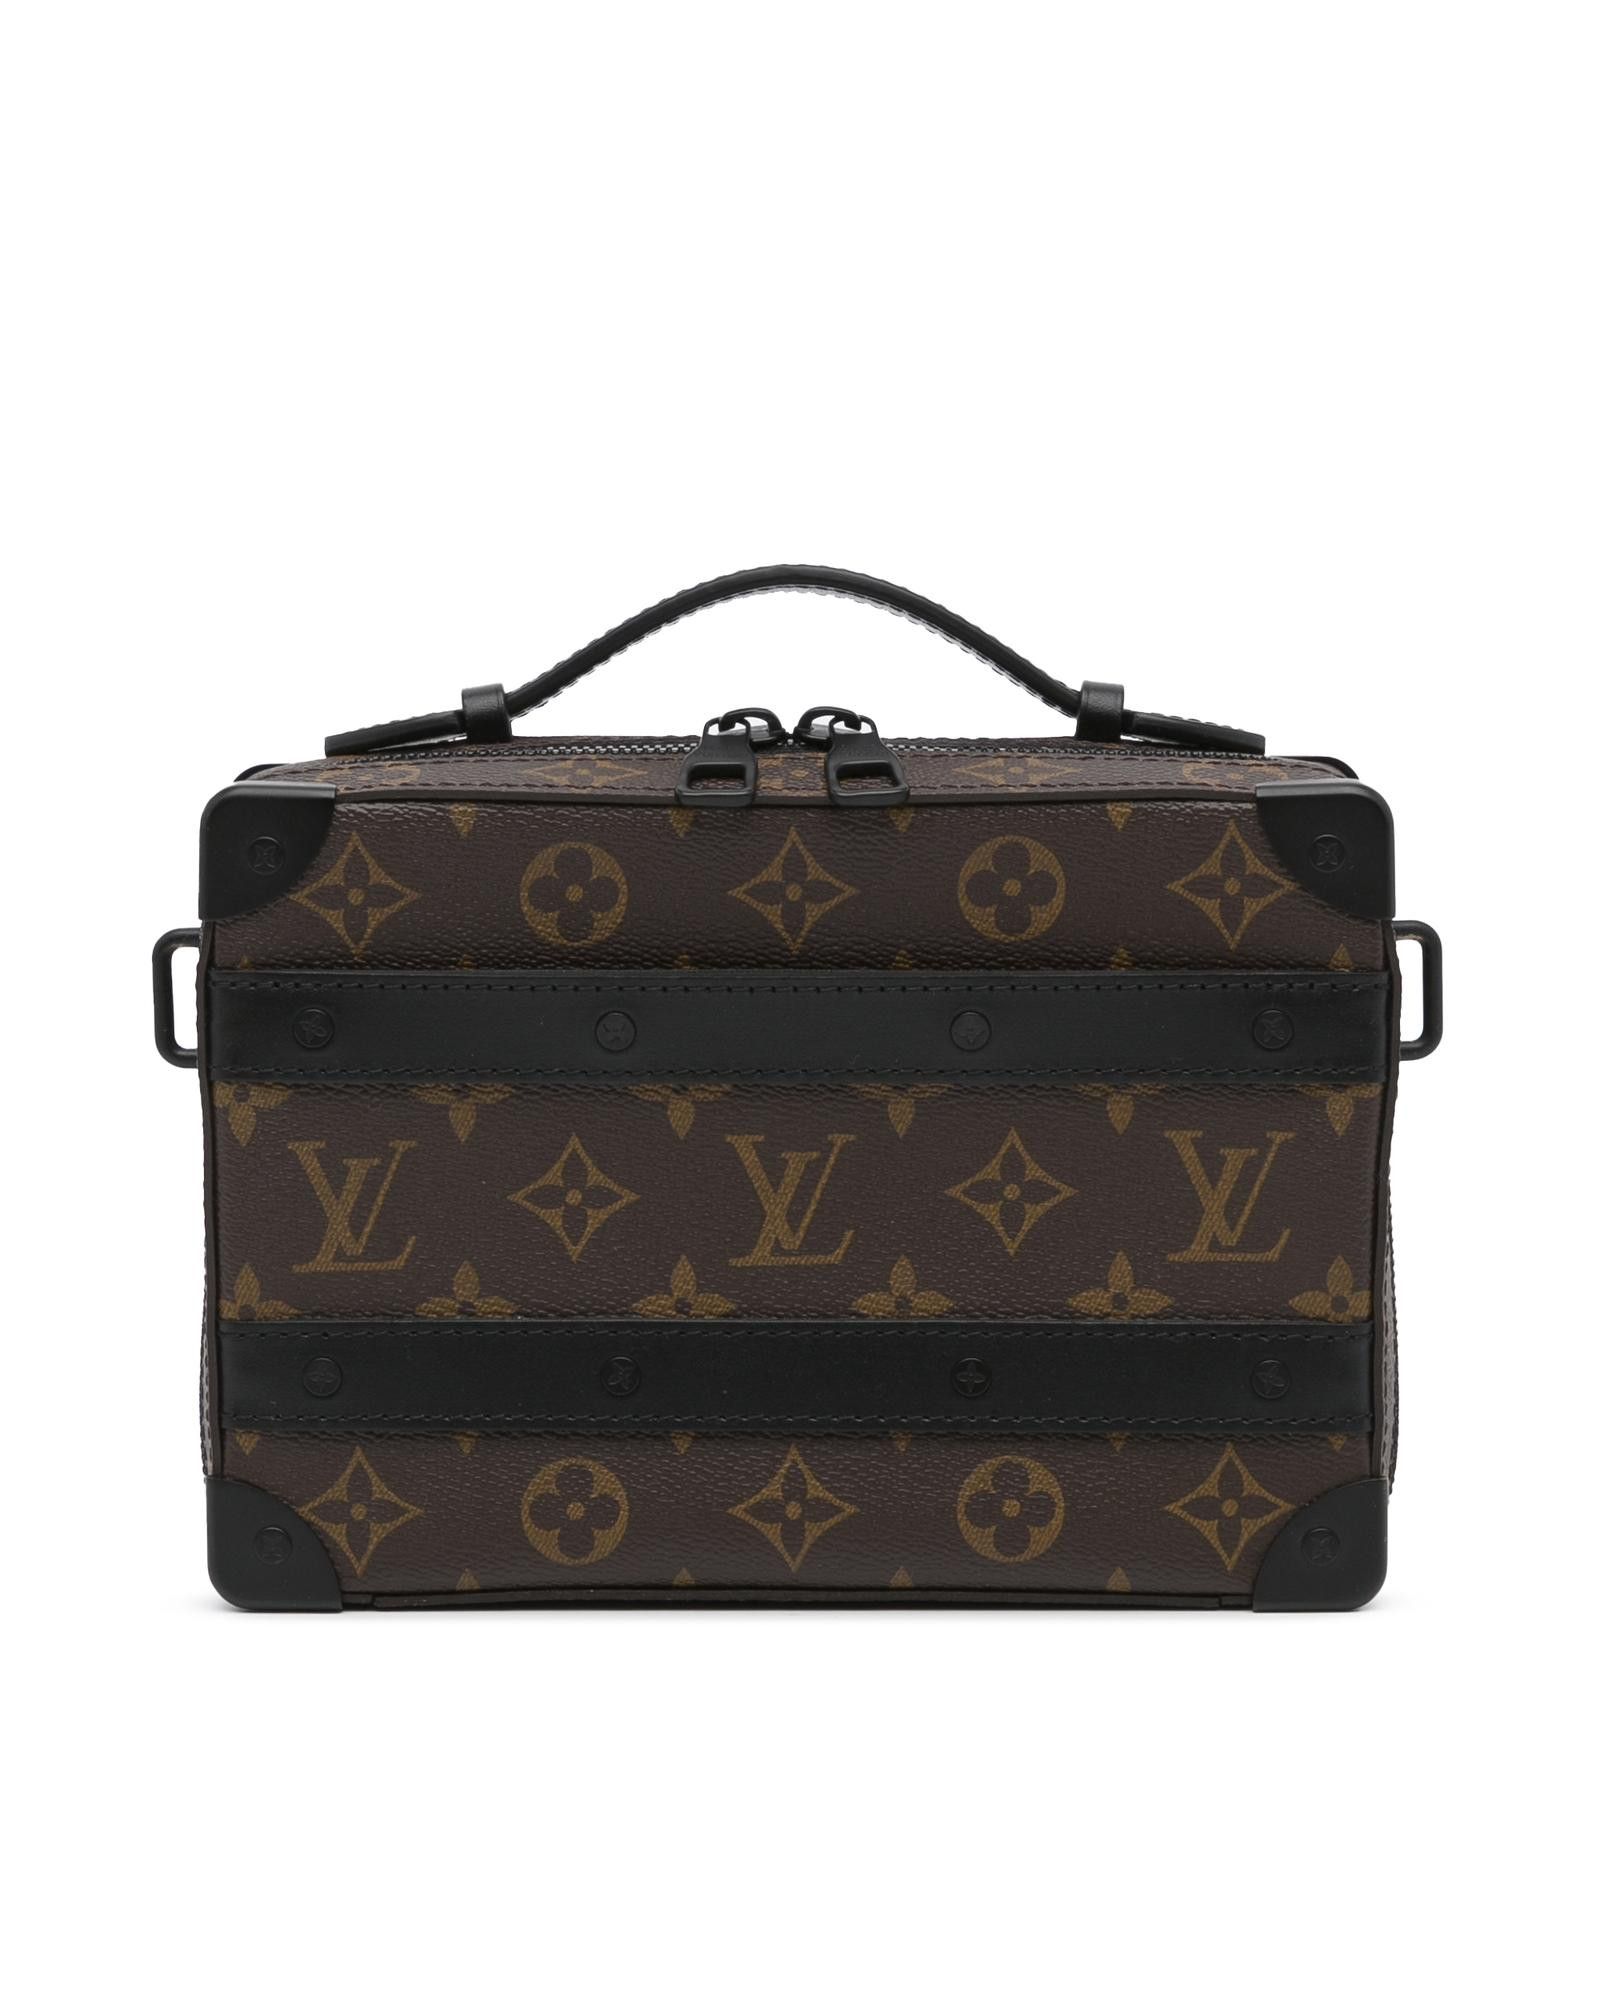 Louis Vuitton Handle Soft Trunk Bag Macassar Monogram Canvas - ShopStyle